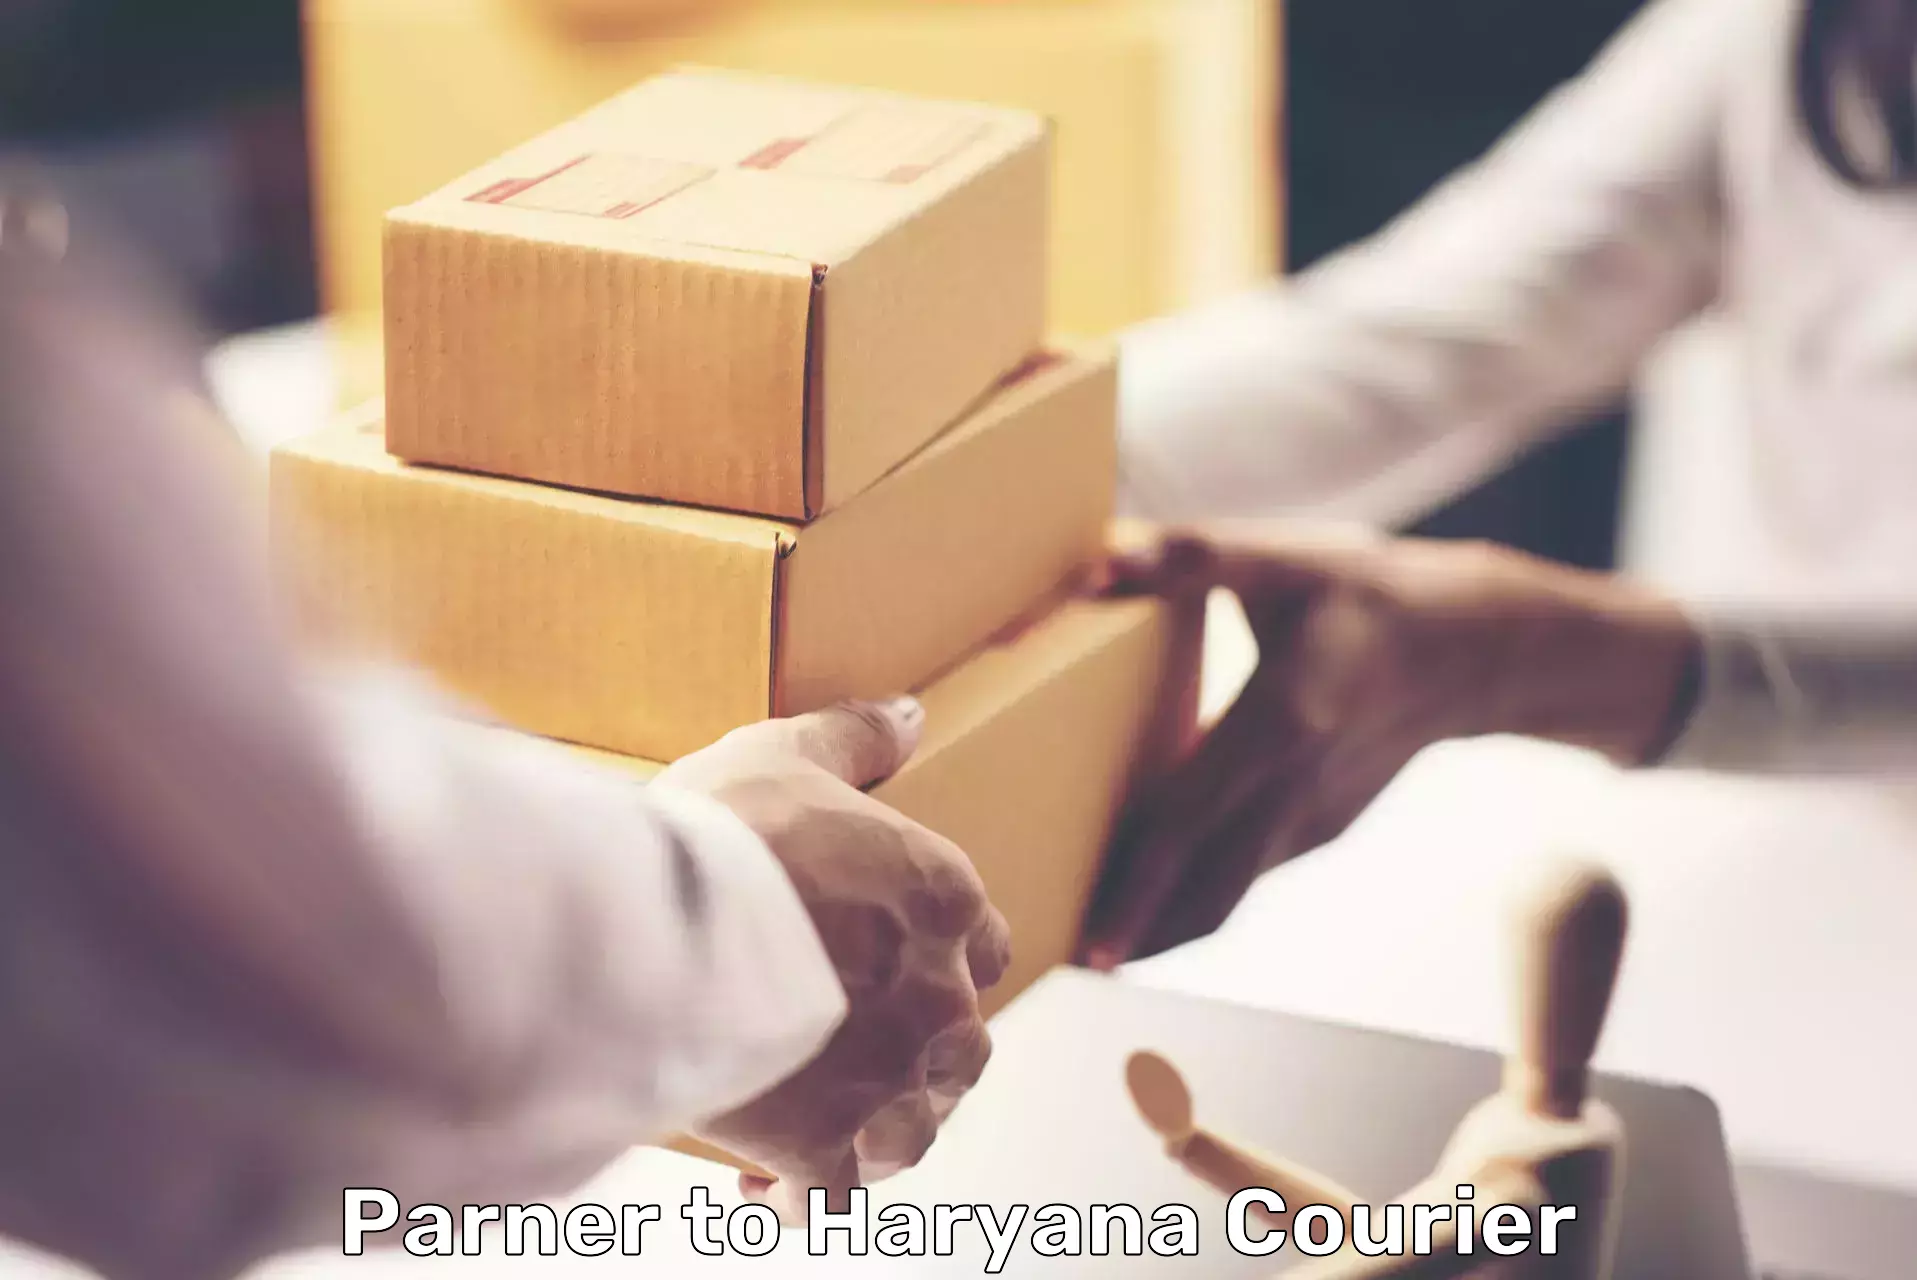 Door-to-door freight service Parner to Haryana